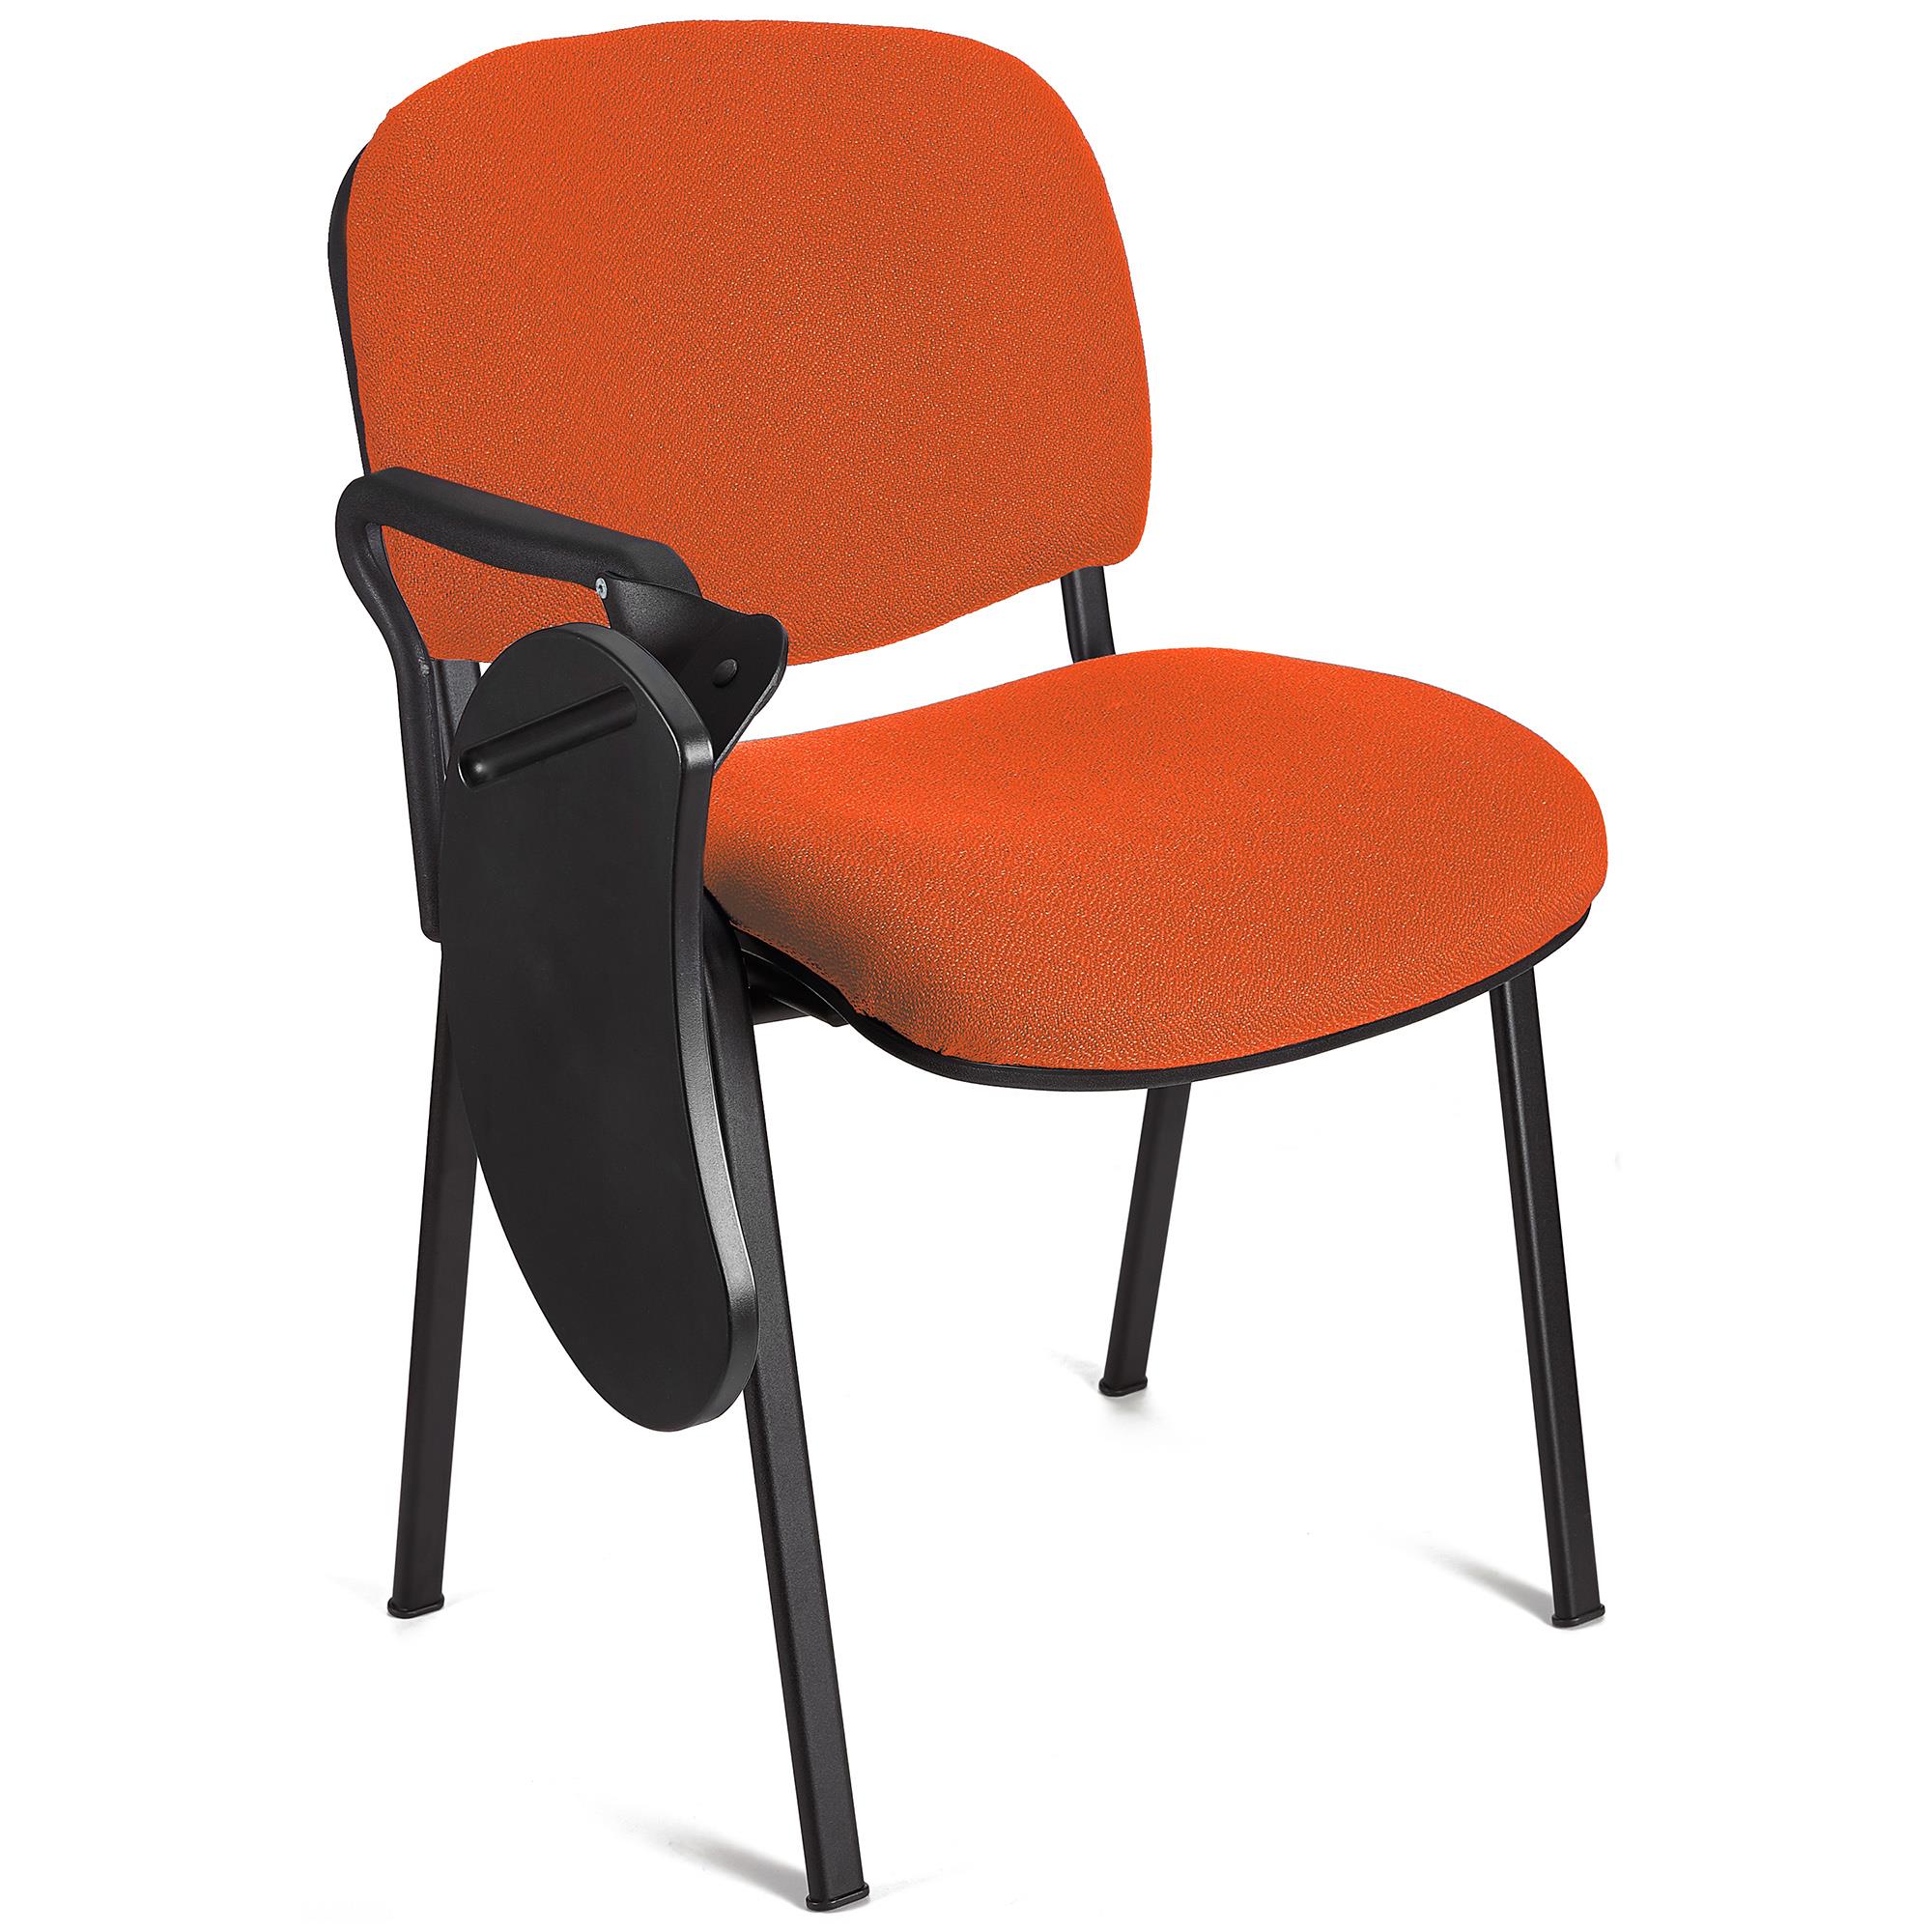 Konferenzstuhl MOBY mit klappbarem Schreibbrett, stapelbar und praktisch, schwarzes Gestell, Farbe Orange